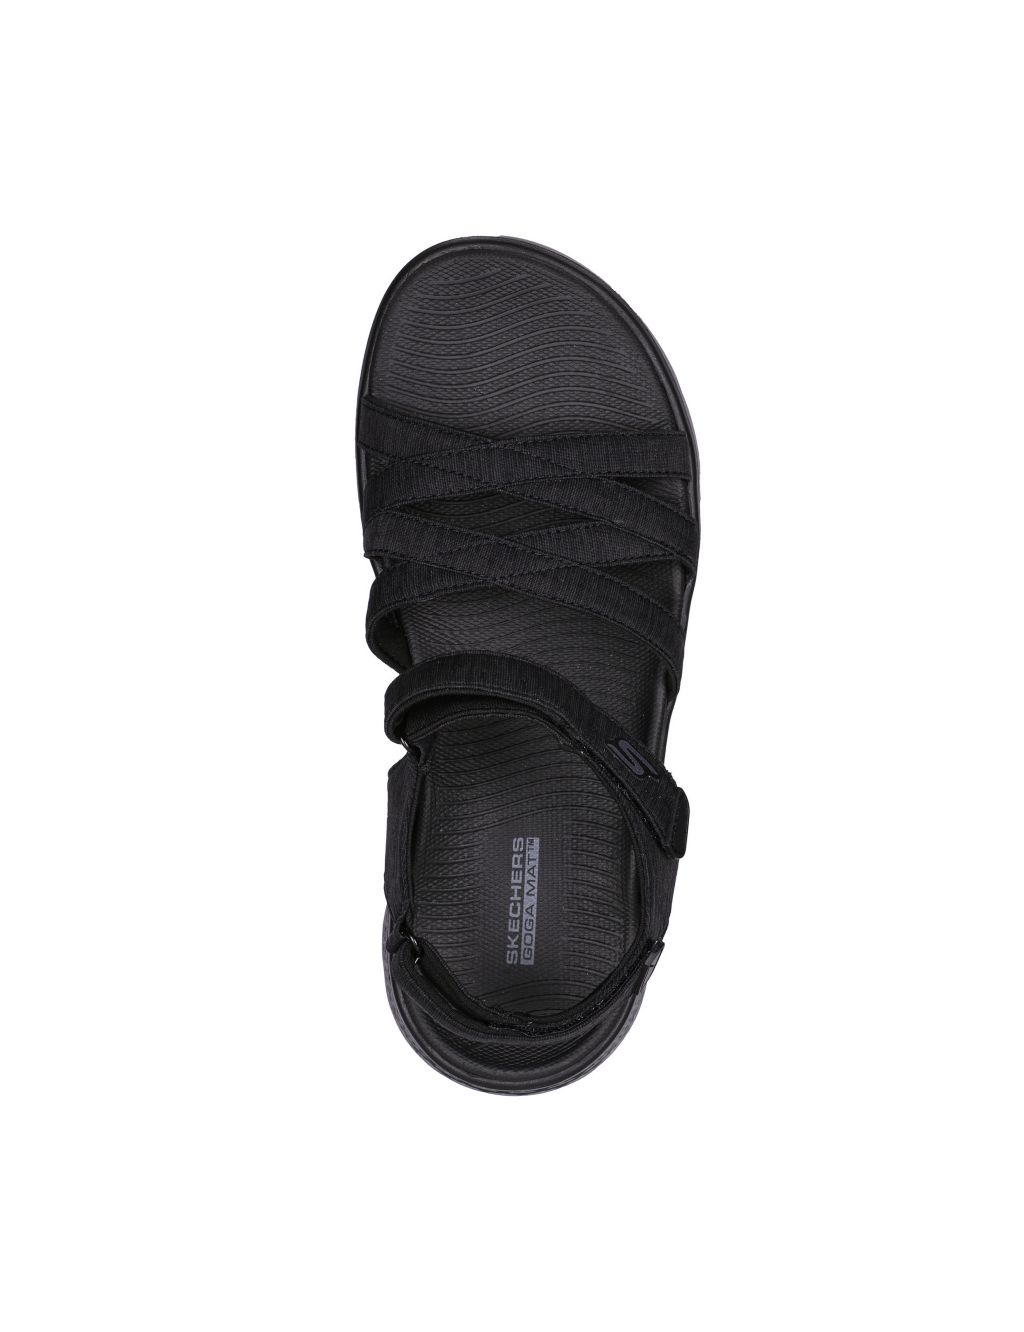 GOwalk Flex Sunshine Sandals image 3